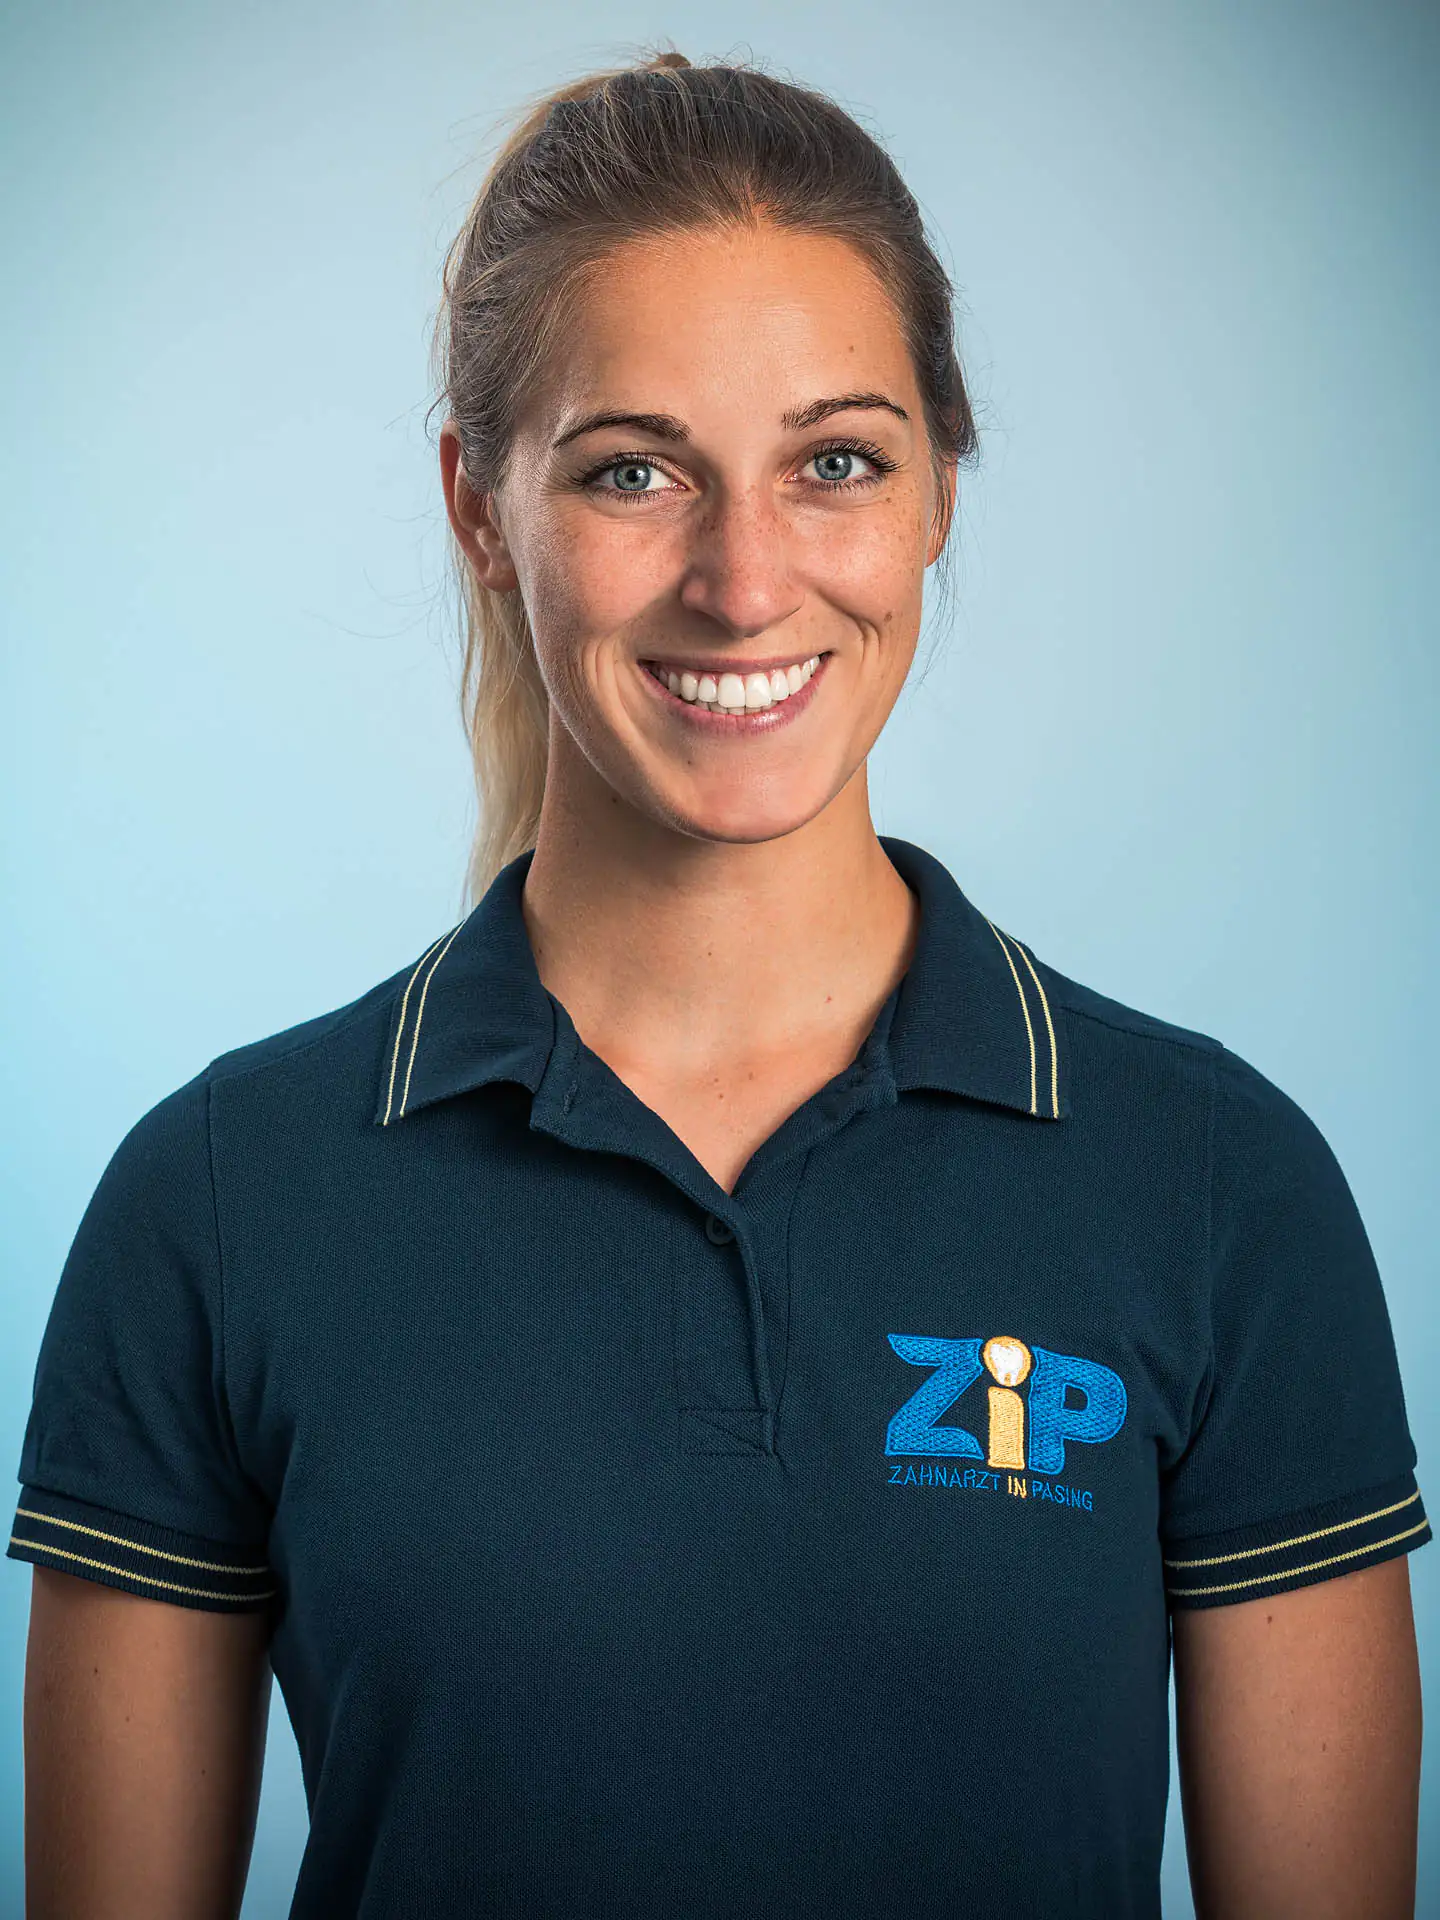 ZiP- Zahnarzt in Pasing